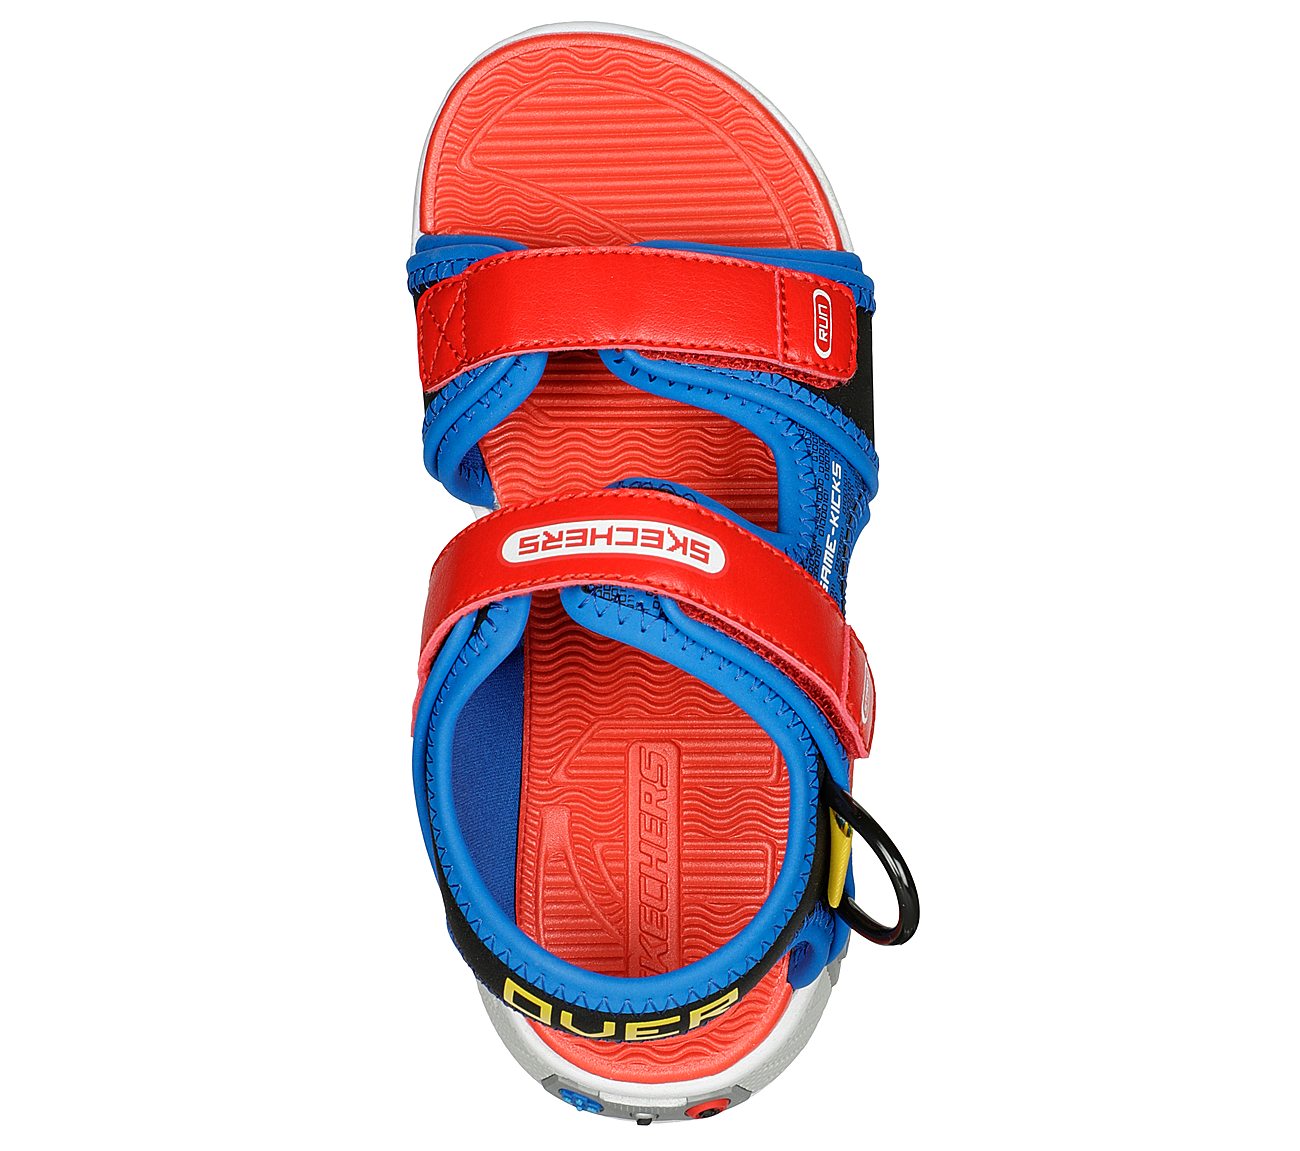 POWER SPLASH, RED/BLUE Footwear Top View